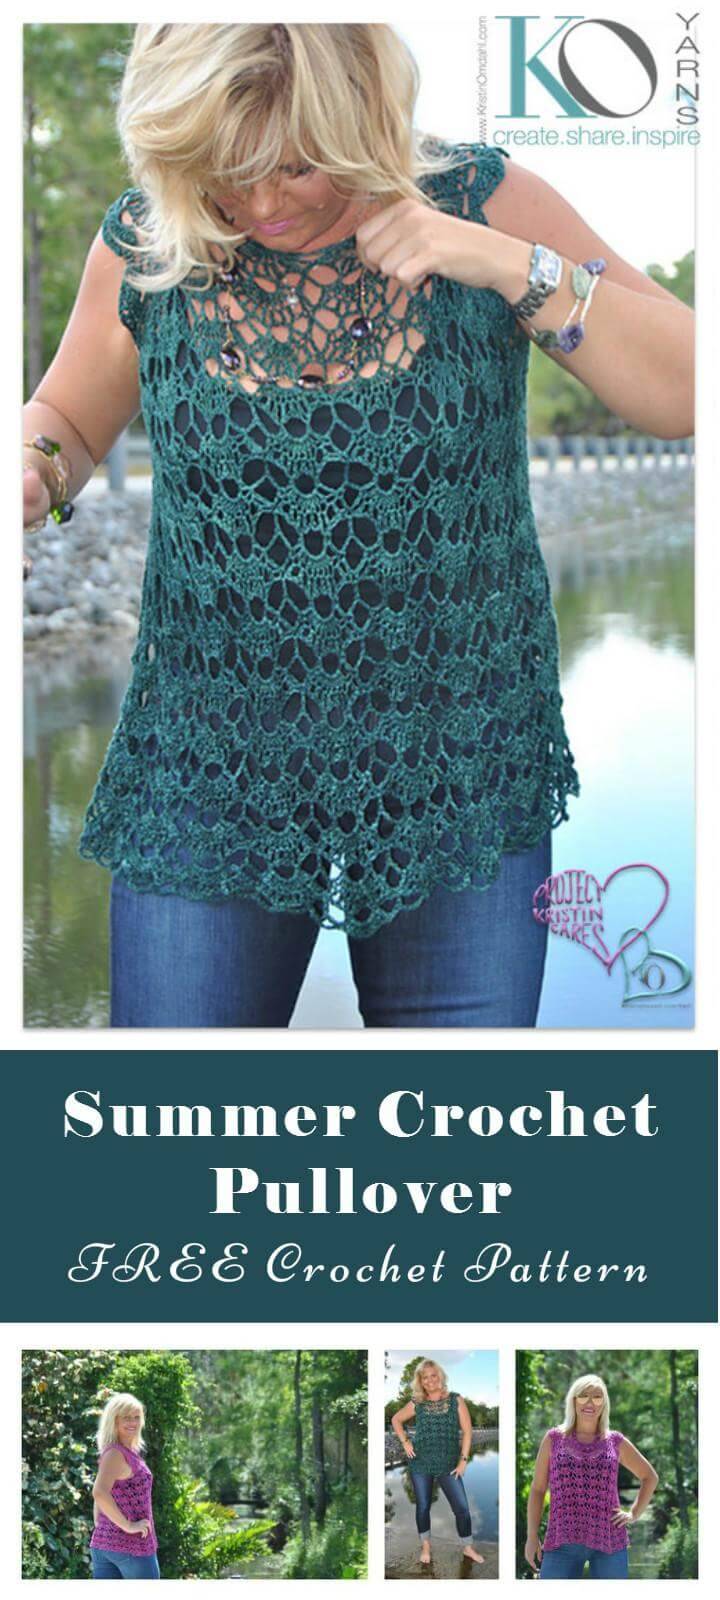 Summer Crochet Pullover FREE Crochet Pattern